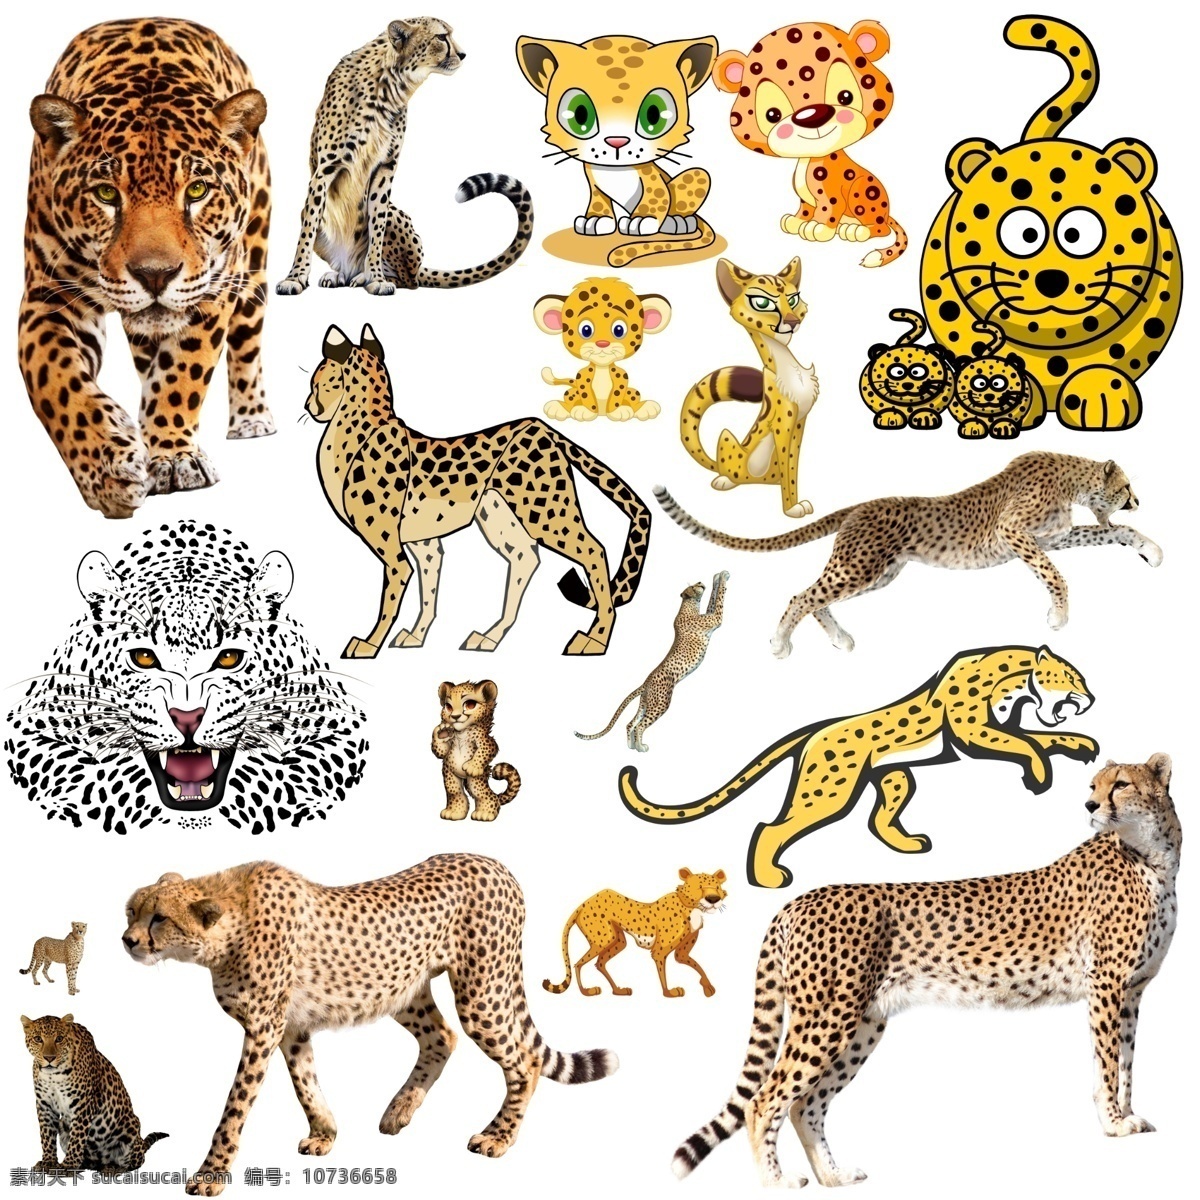 豹子 野生动物 稀有动物 动物 动物园 哺乳动物 卡通猎豹 漫画猎豹 可爱猎豹 分层